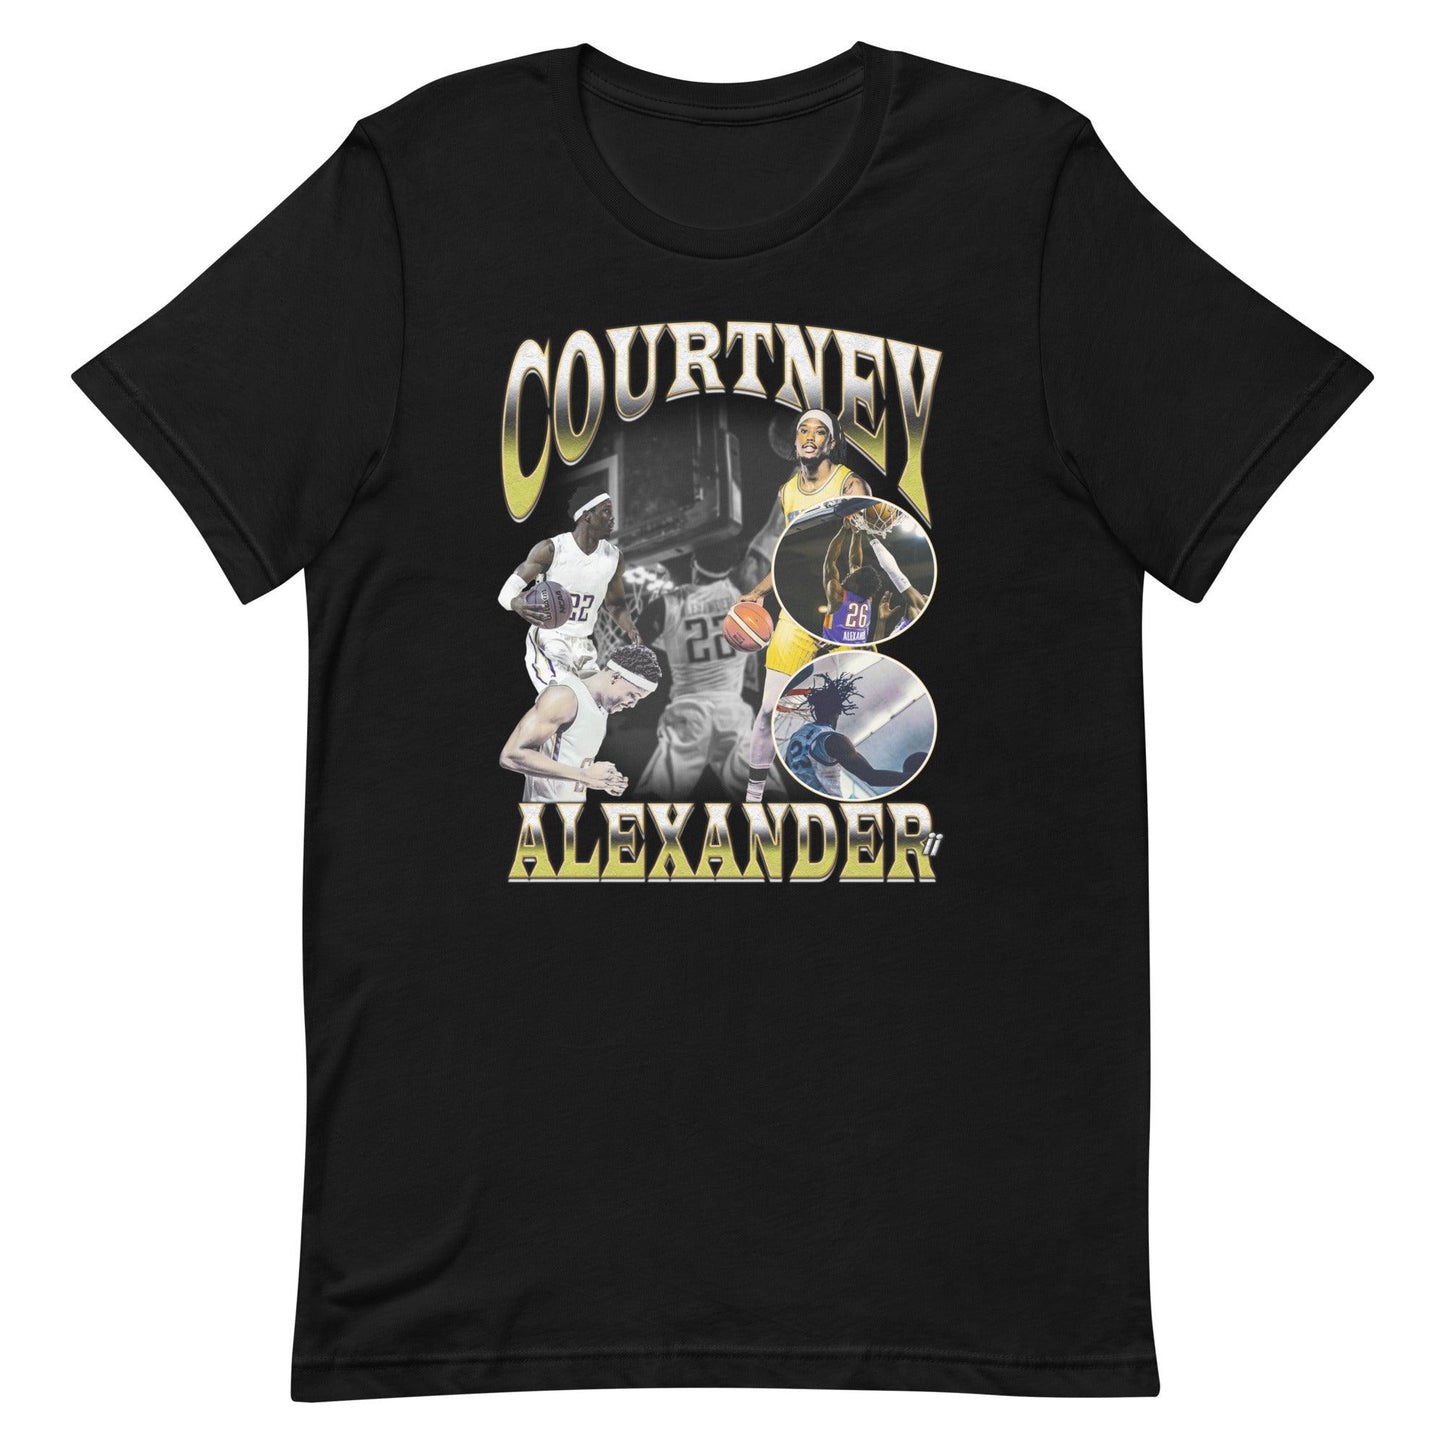 Courtney Alexander "Jersey" t-shirt - Fan Arch